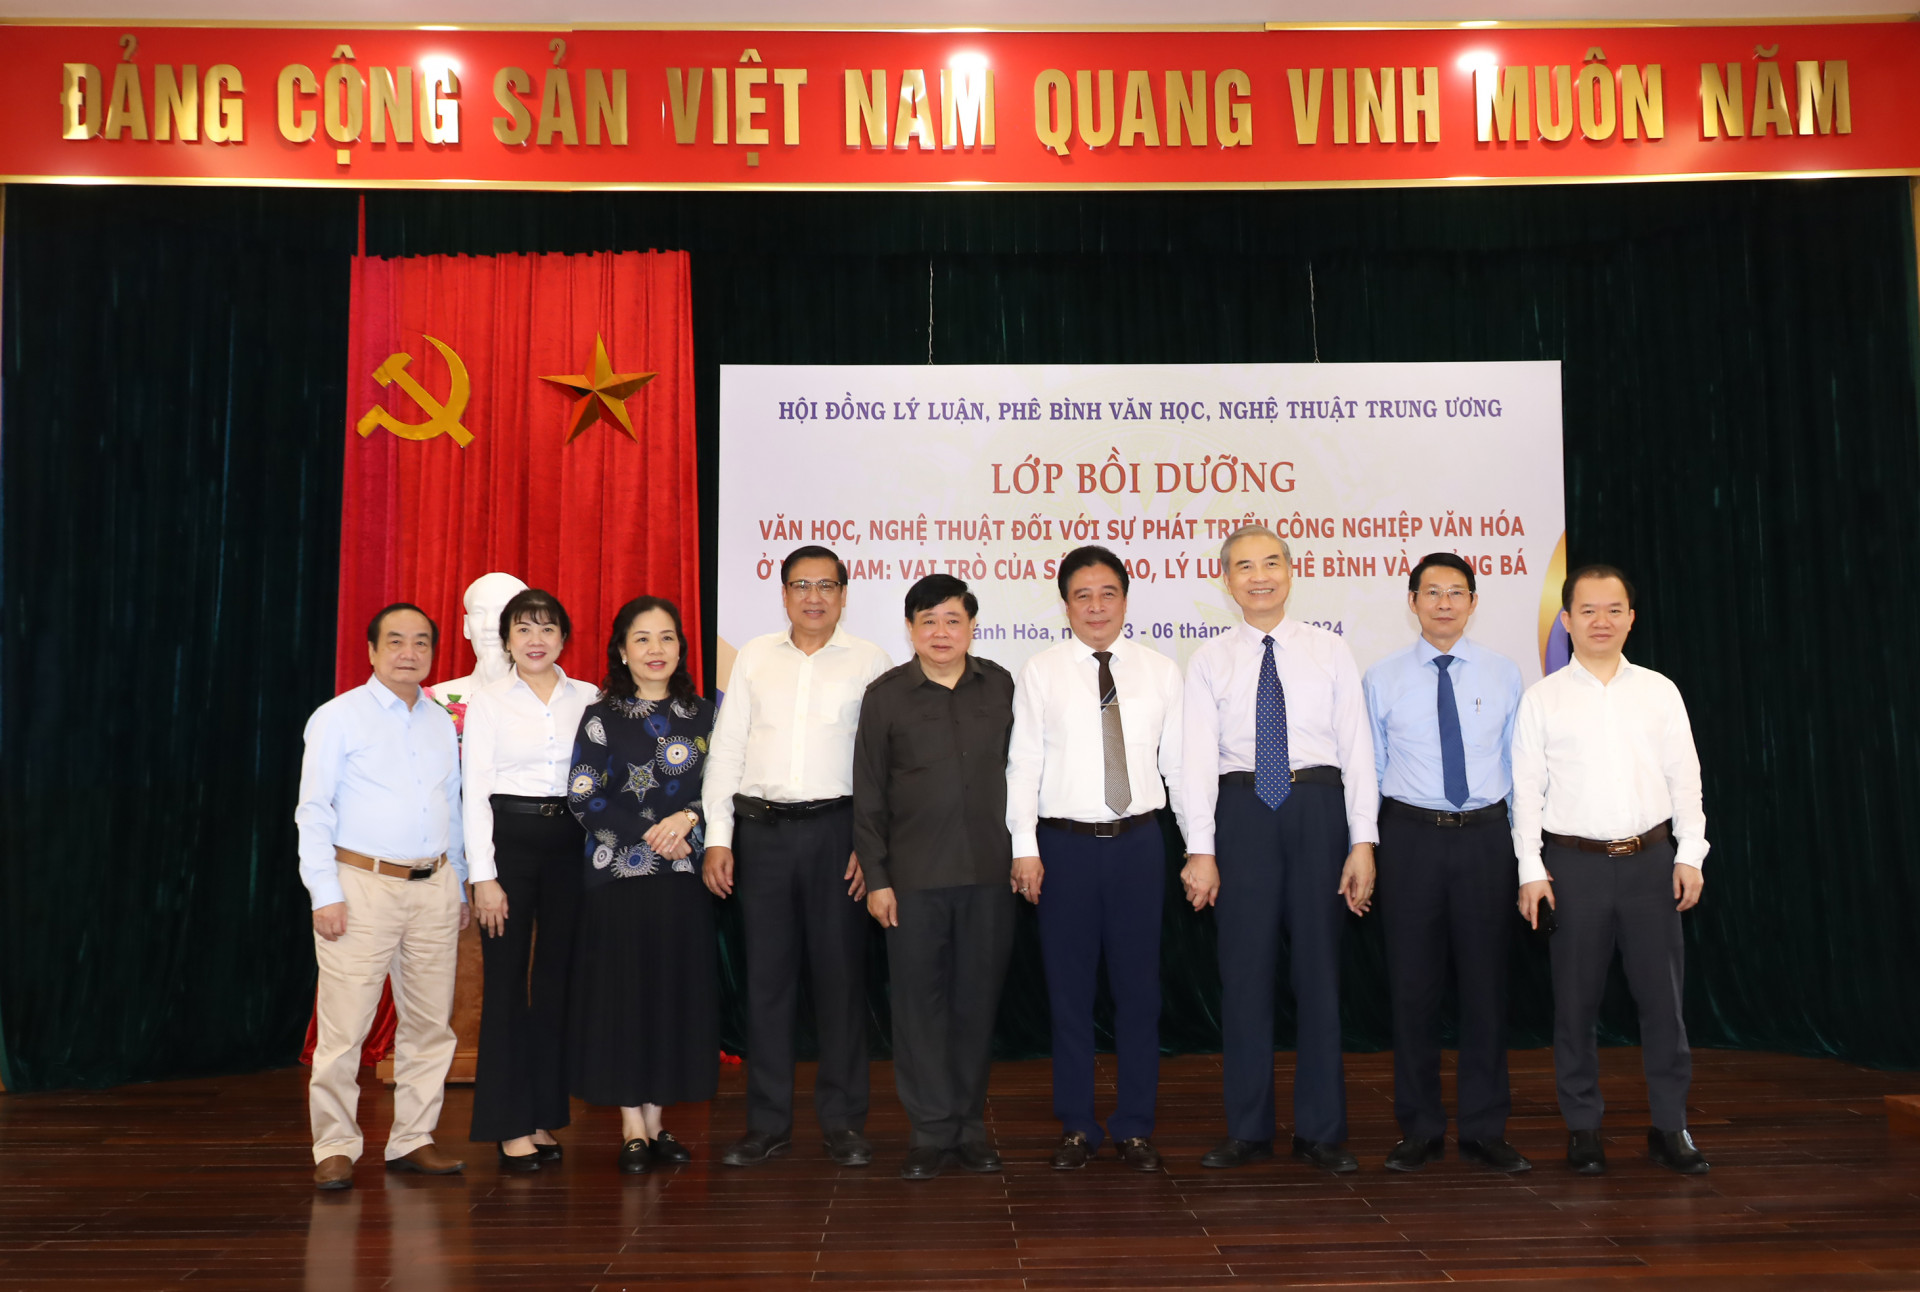 Các đồng chí lãnh đạo tỉnh Khánh Hòa chụp hình lưu niệm với lãnh đạo Hội đồng Lý luận, phê bình Văn học nghệ thuật Trung ương.